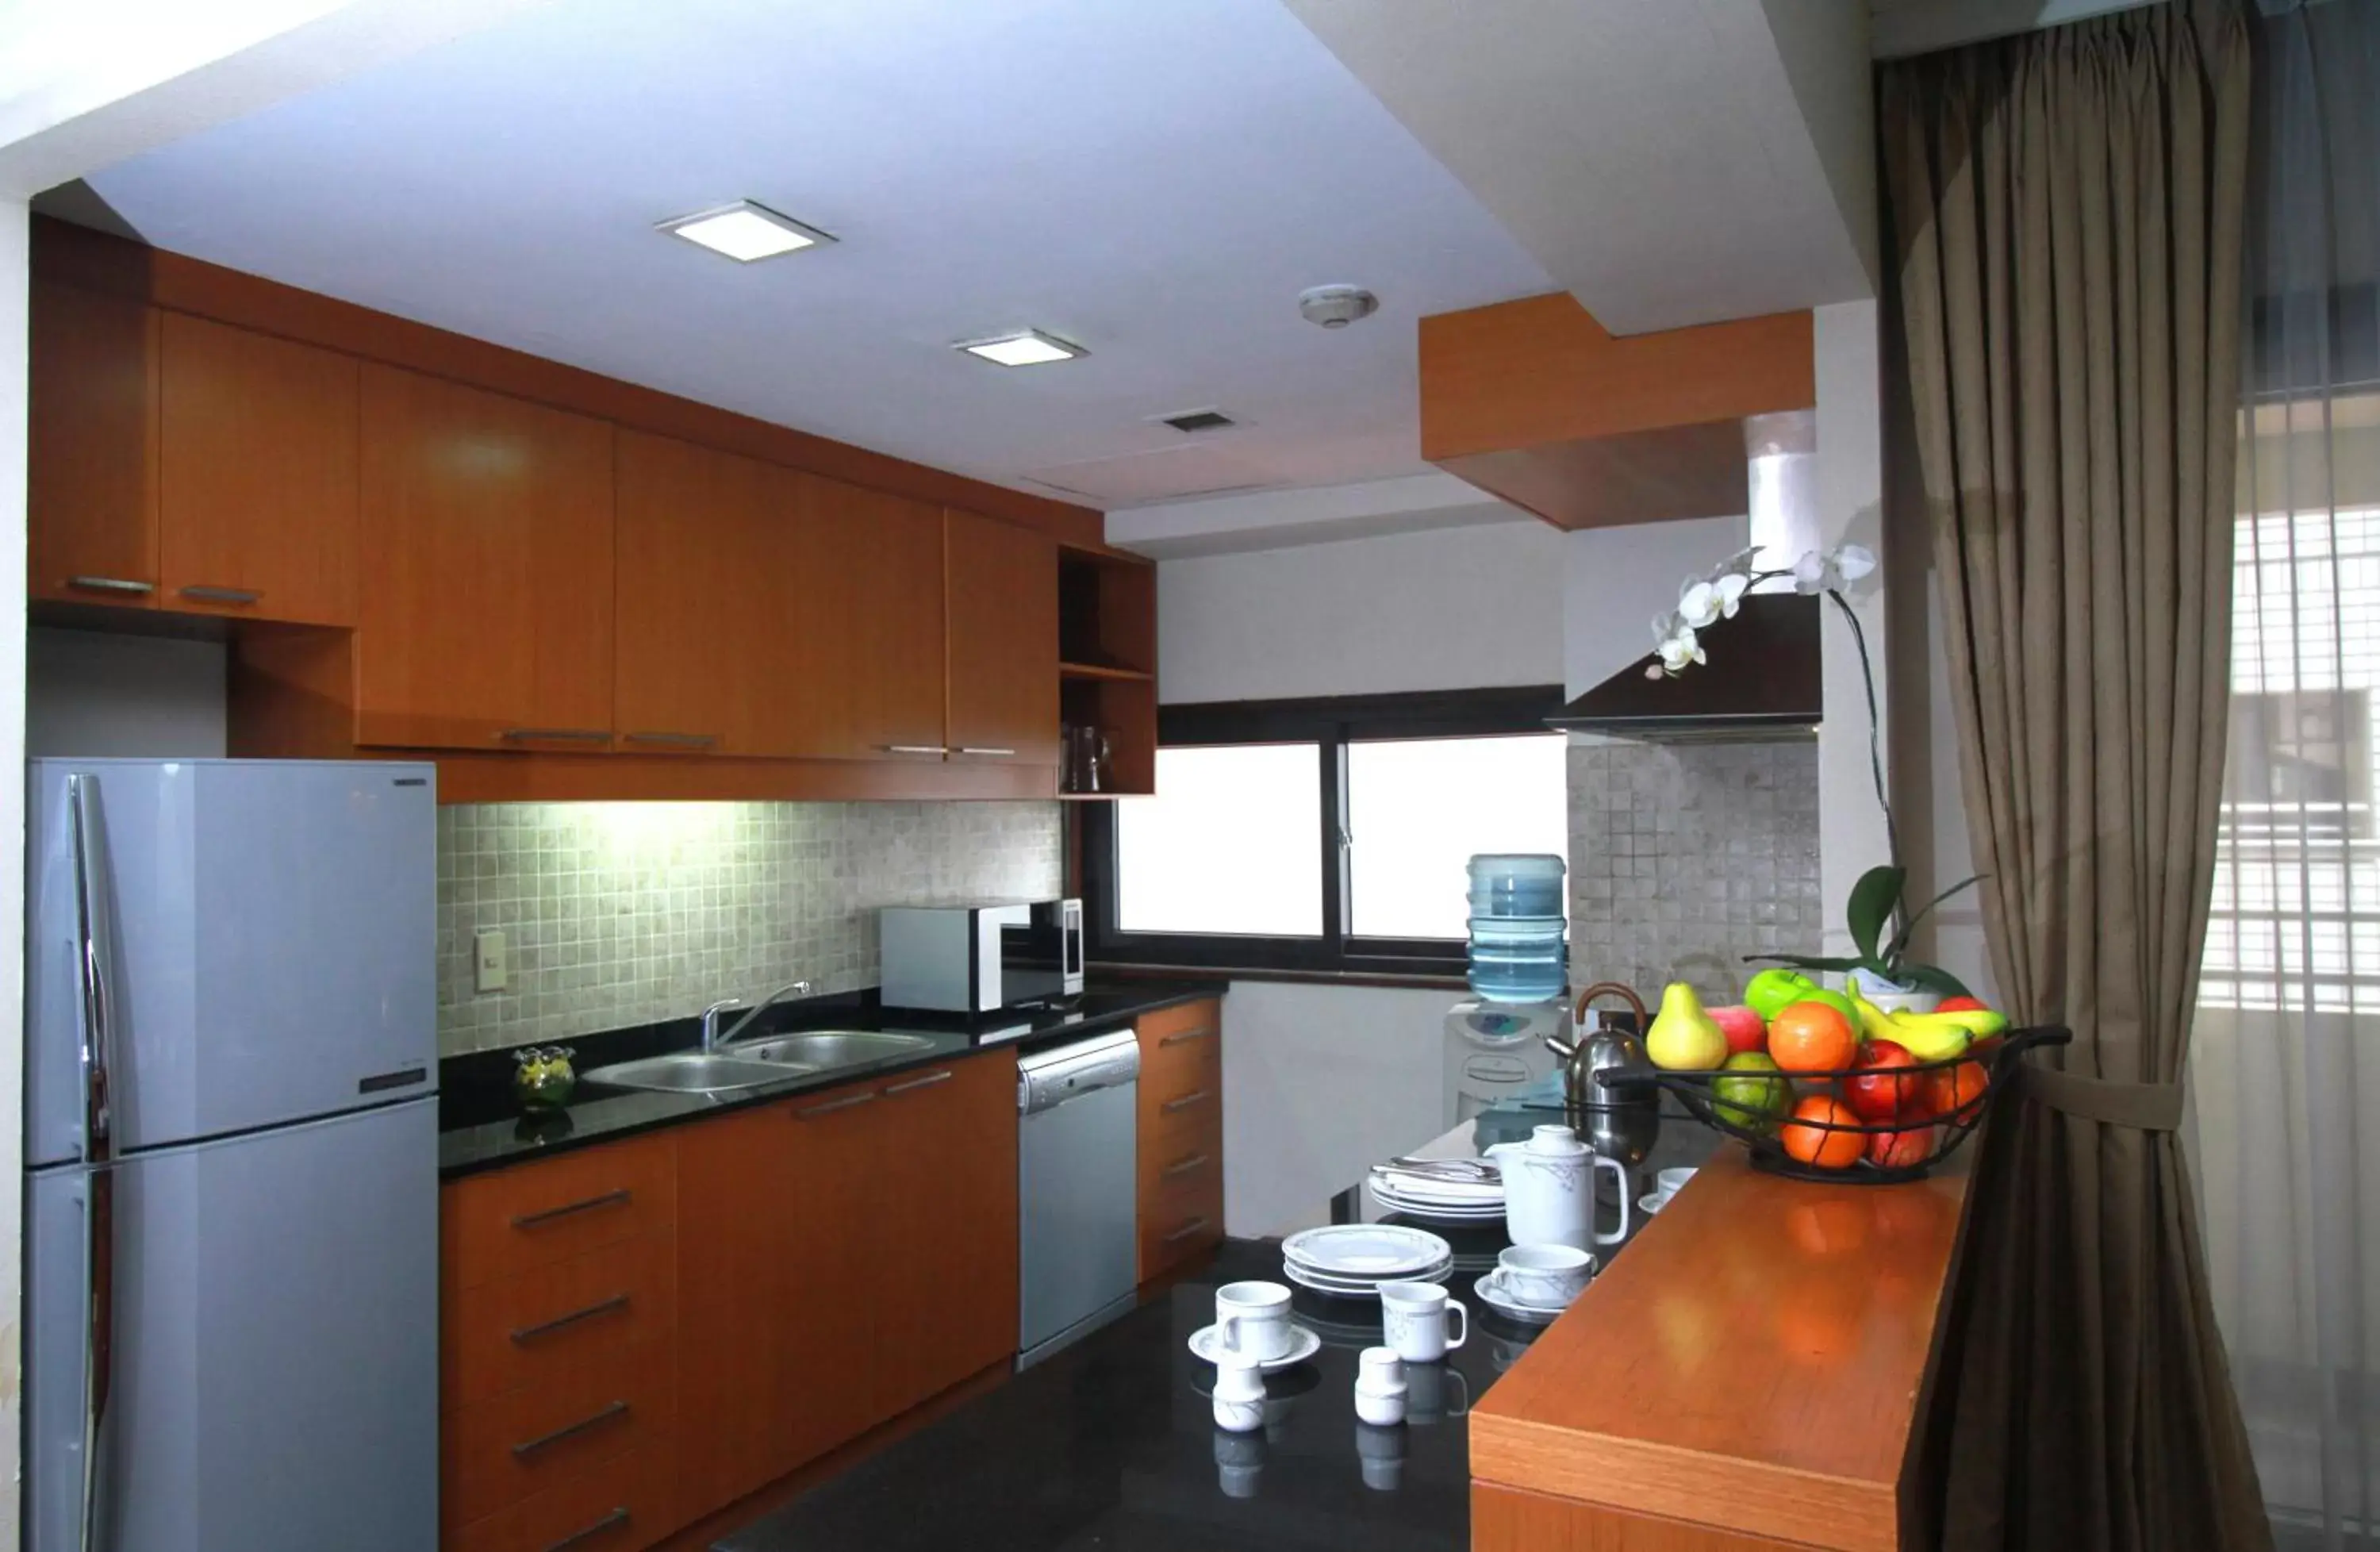 Kitchen or kitchenette, Kitchen/Kitchenette in The Sultan Hotel & Residence Jakarta